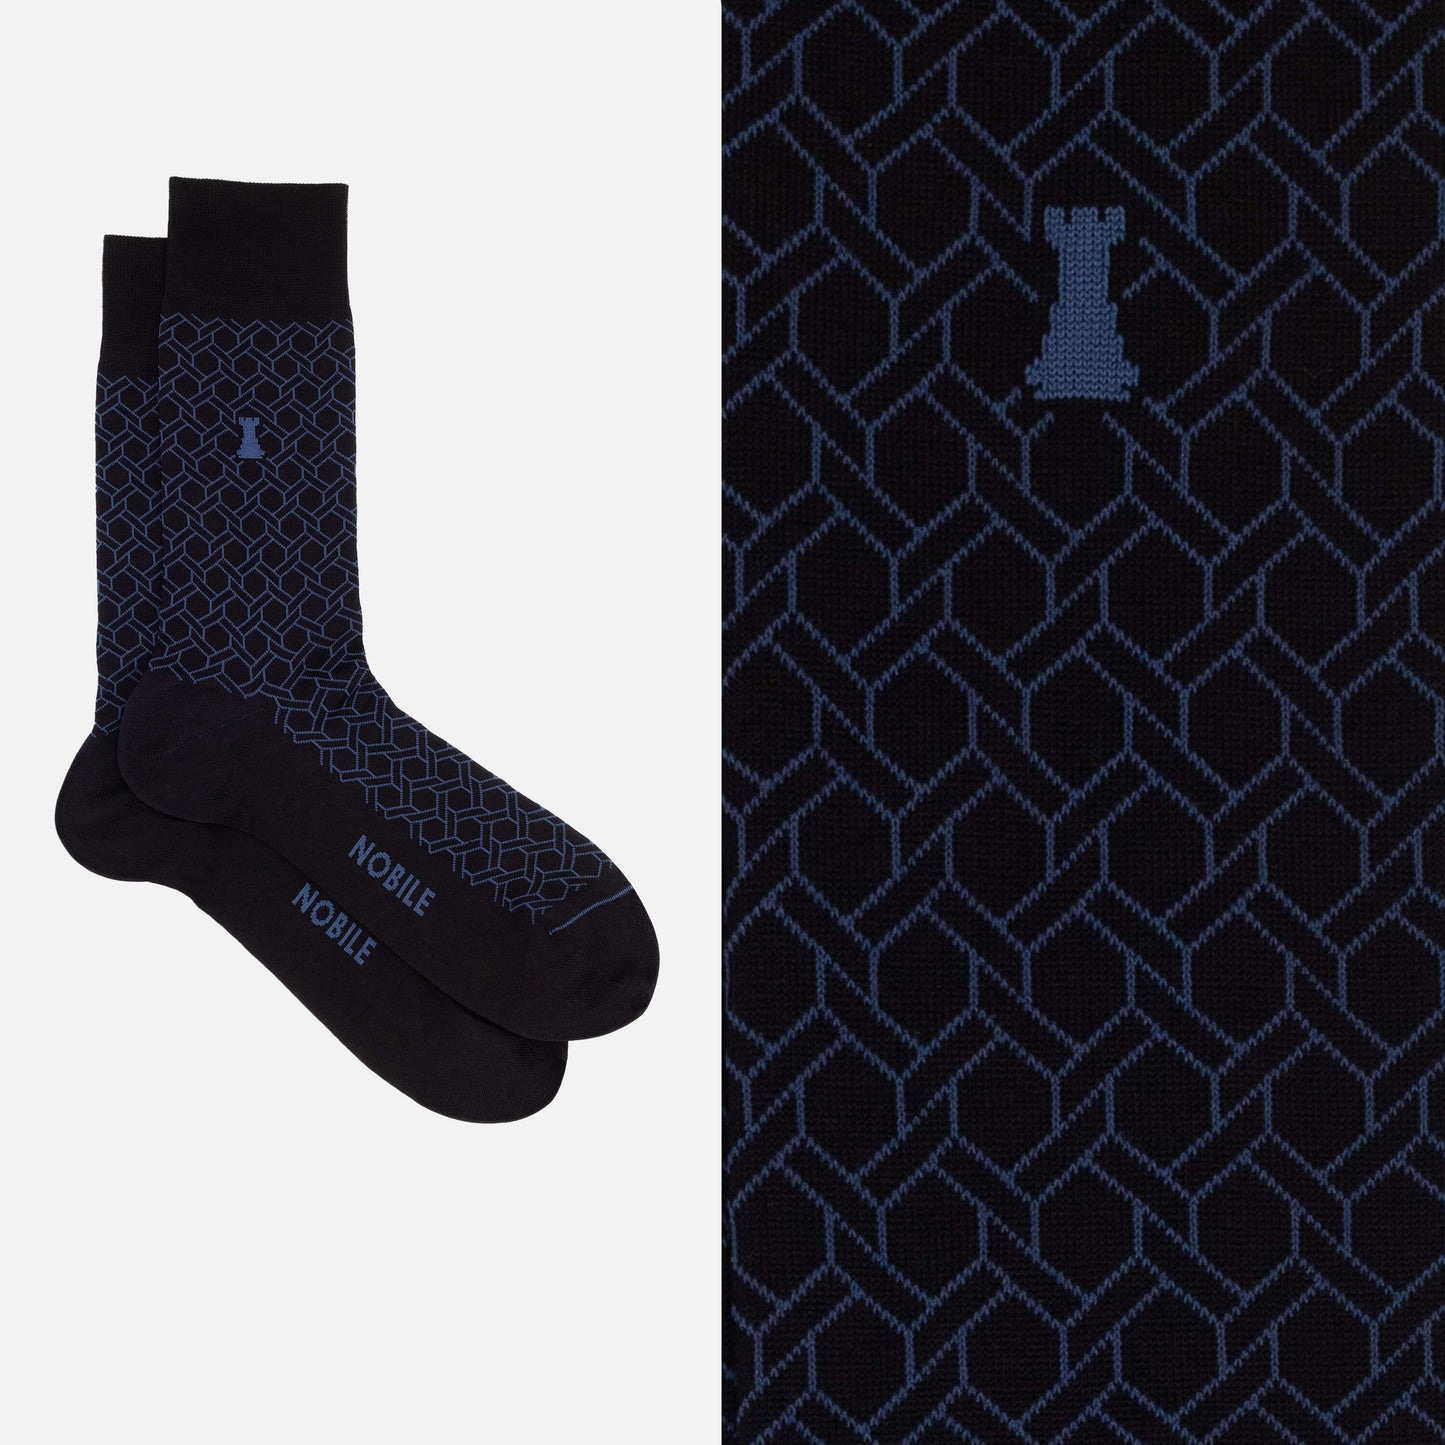 The Great Gatsby Box mit 6 Socken – Gemischte Designs